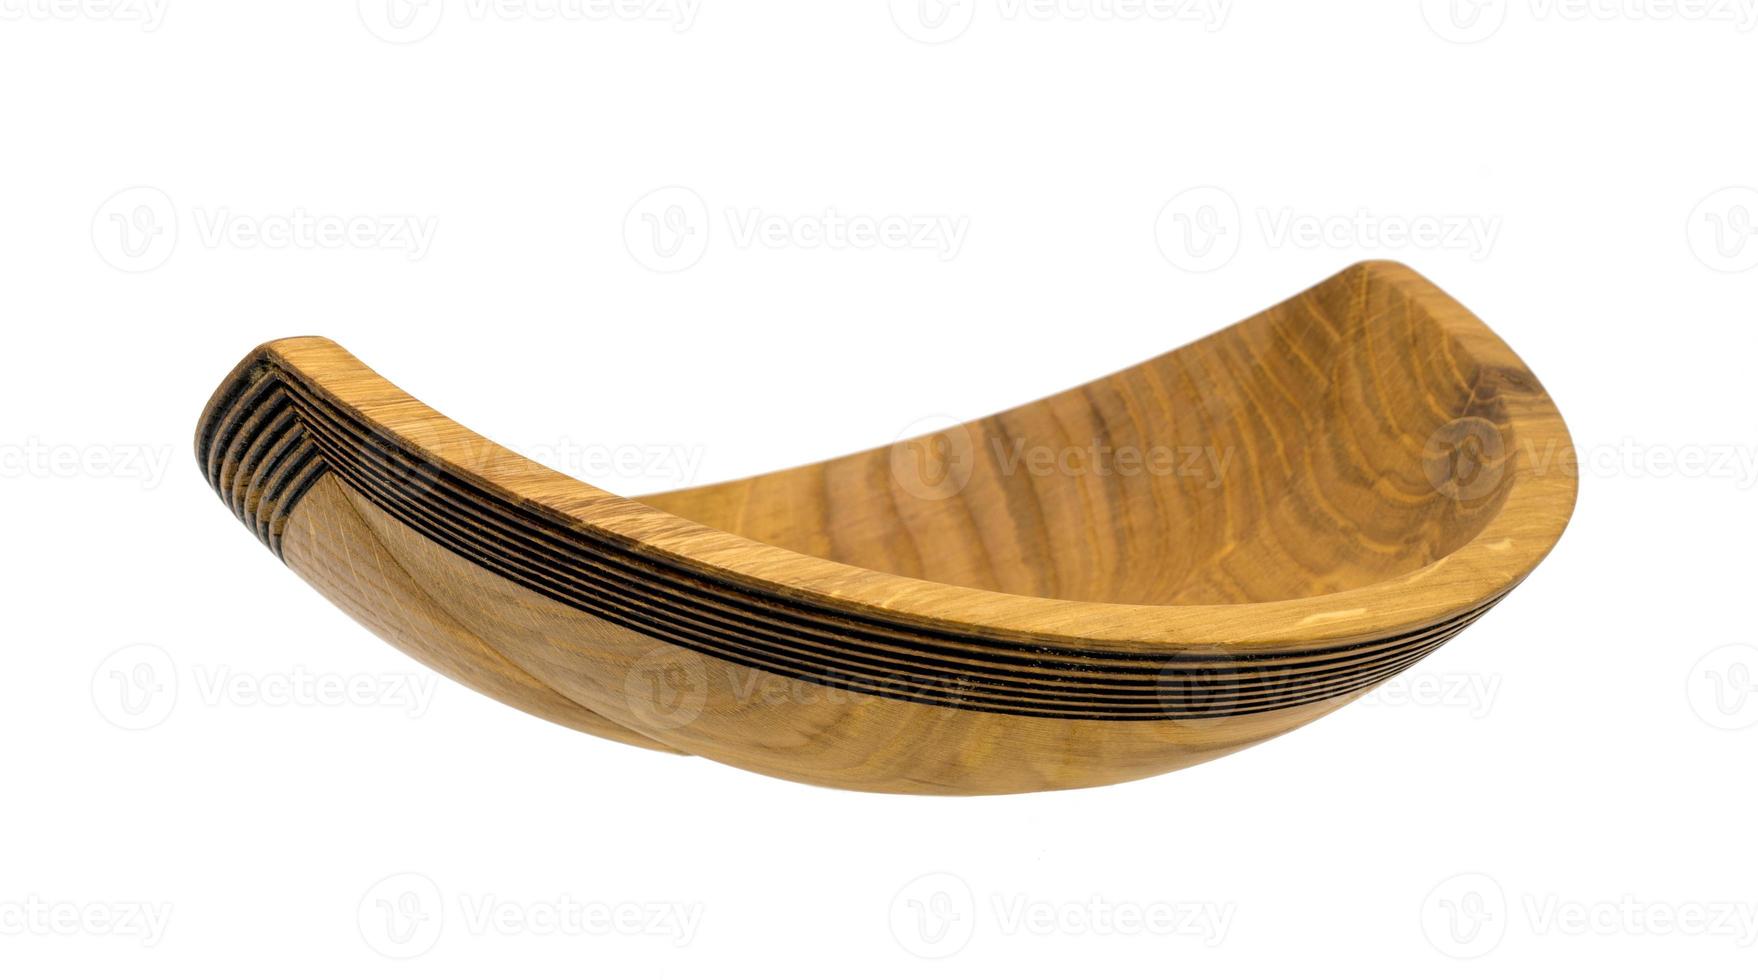 Cuenco de madera torneada a mano de roble en forma de barco foto